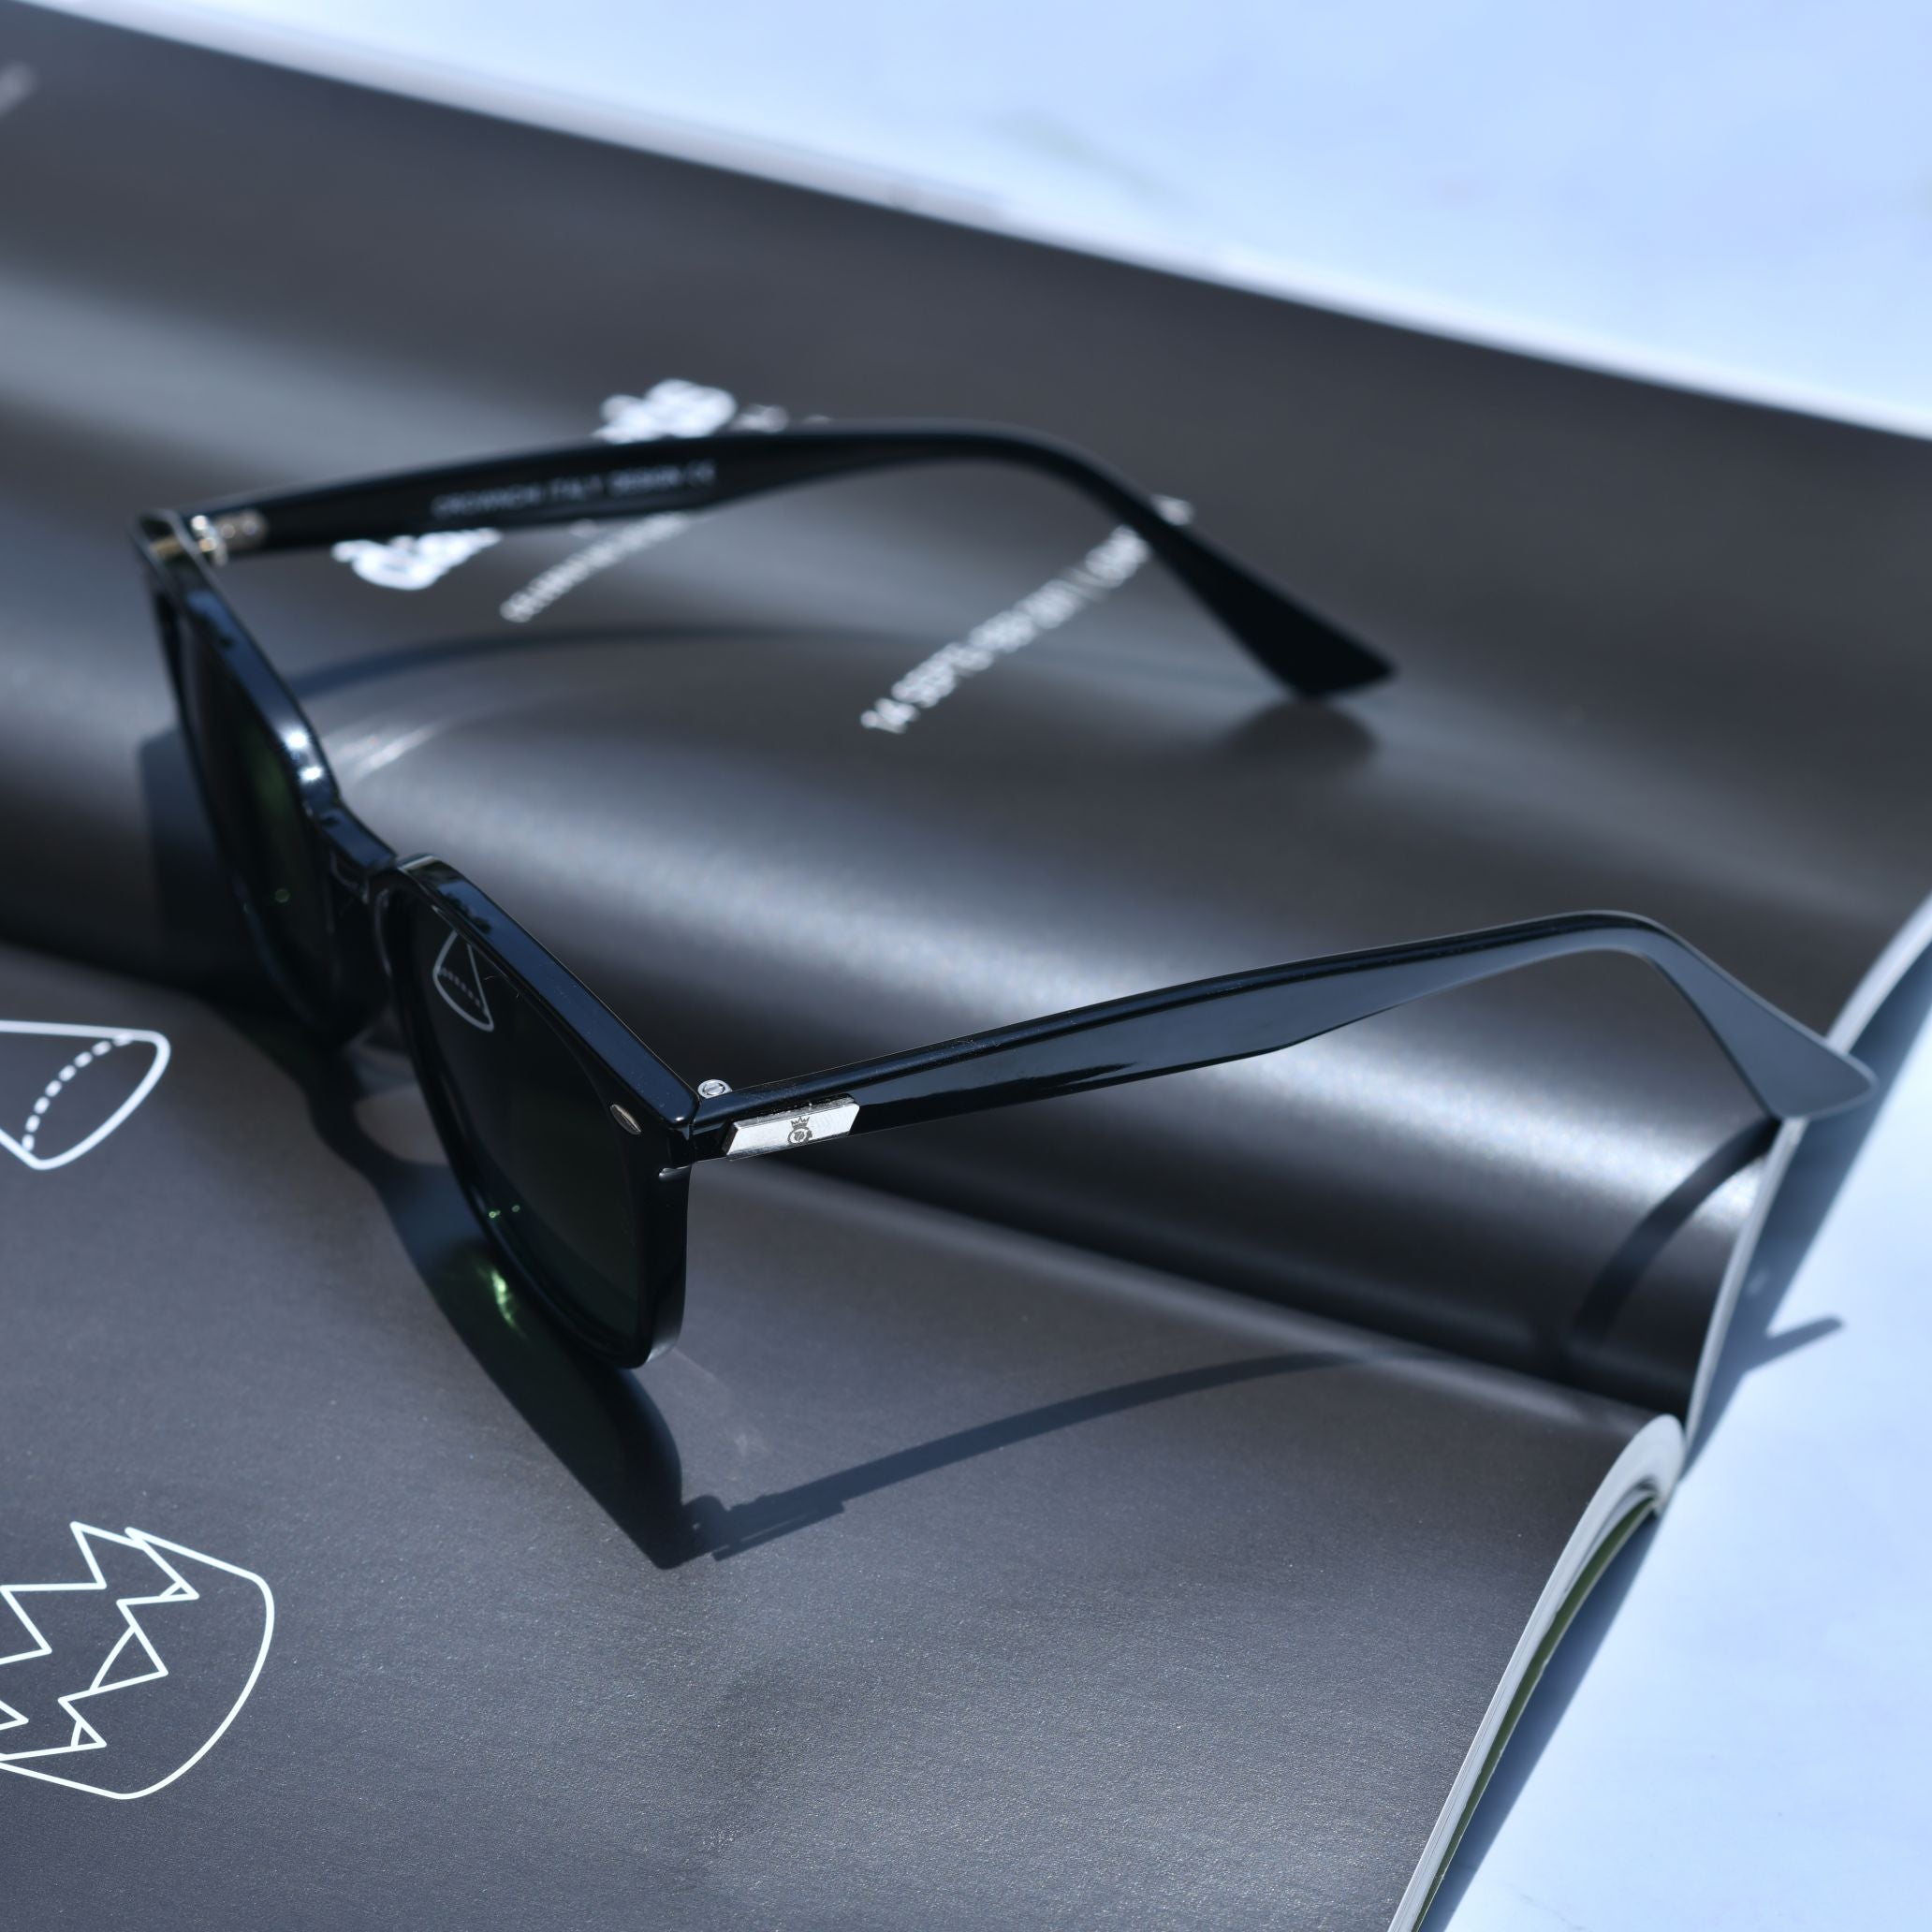 Asgard Black Green Square Edition Sunglasses